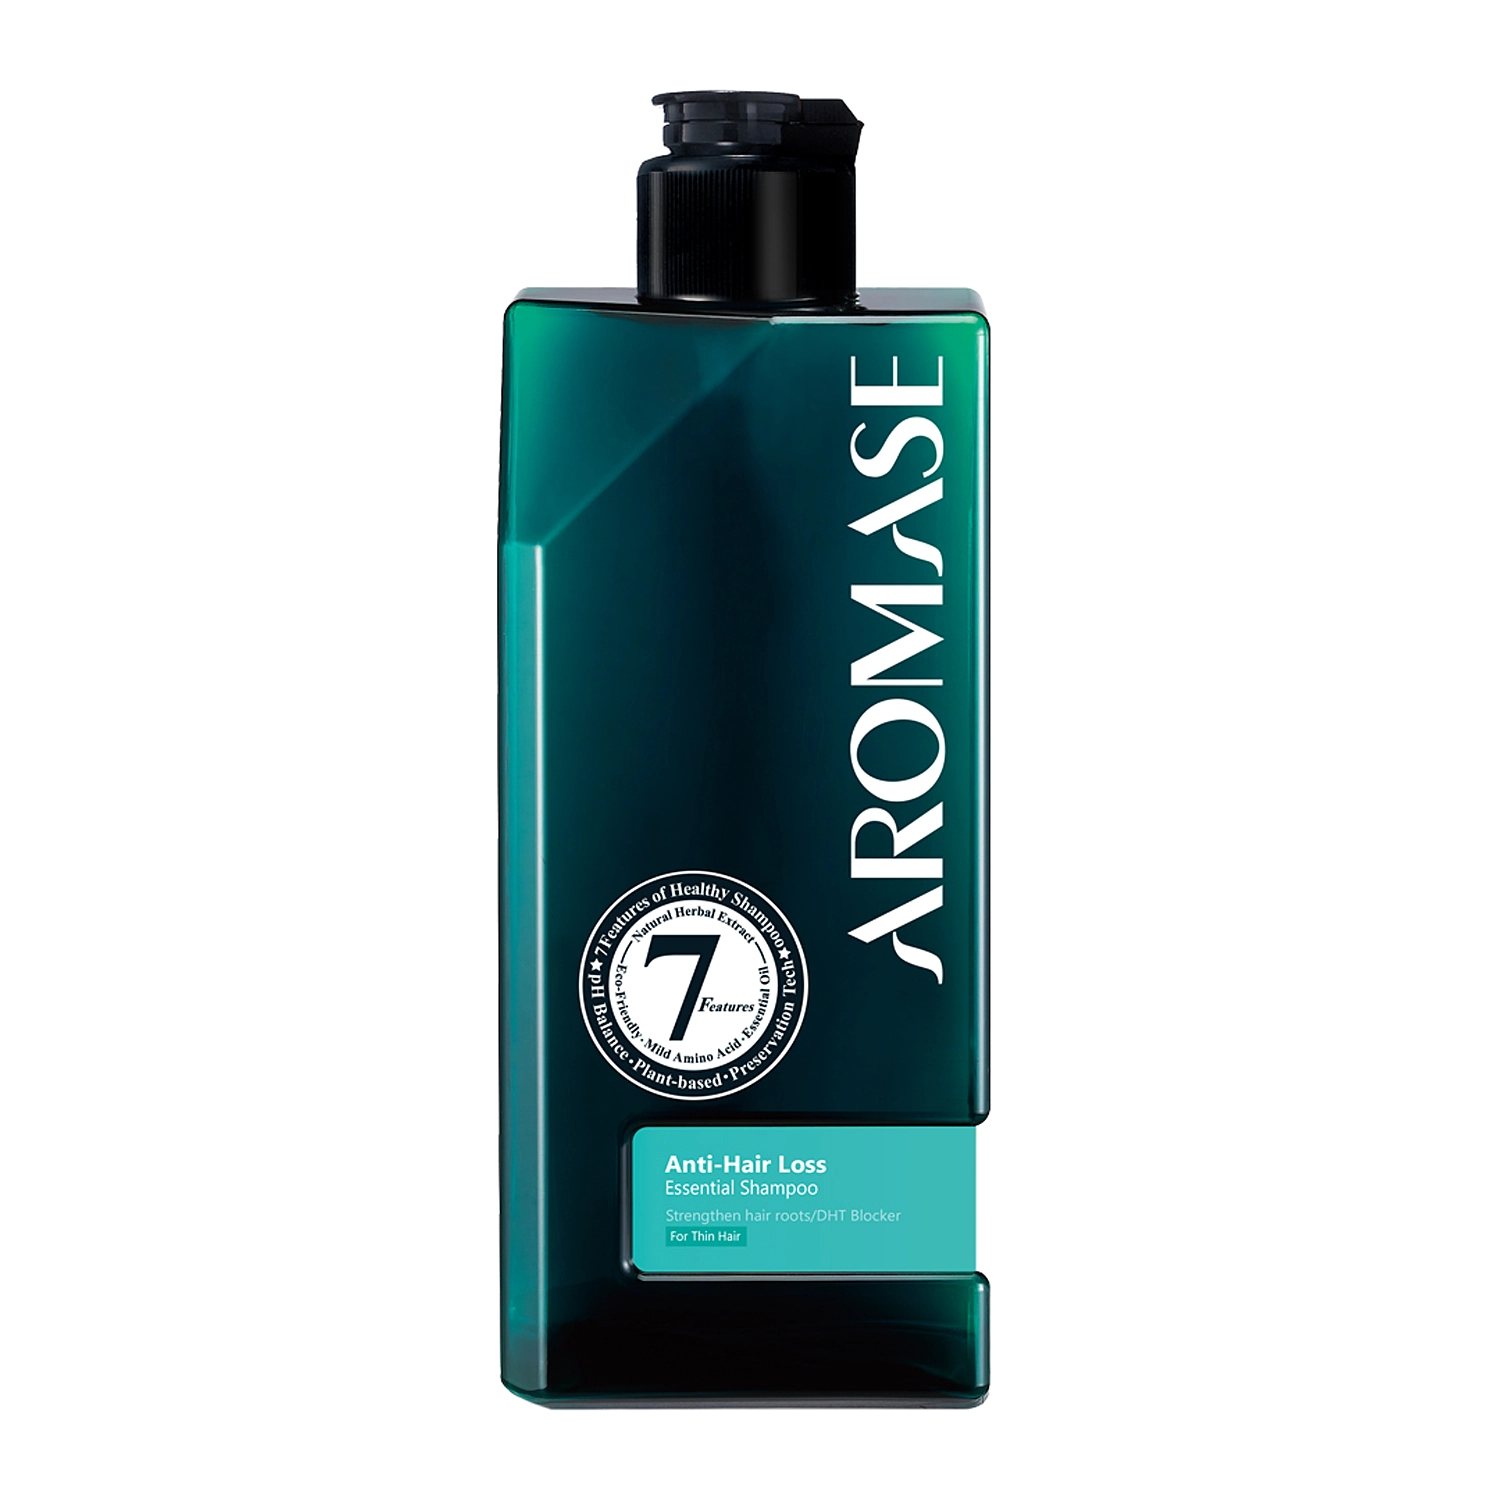 szampon ph 5 5 przeciw wypadaniu włosów